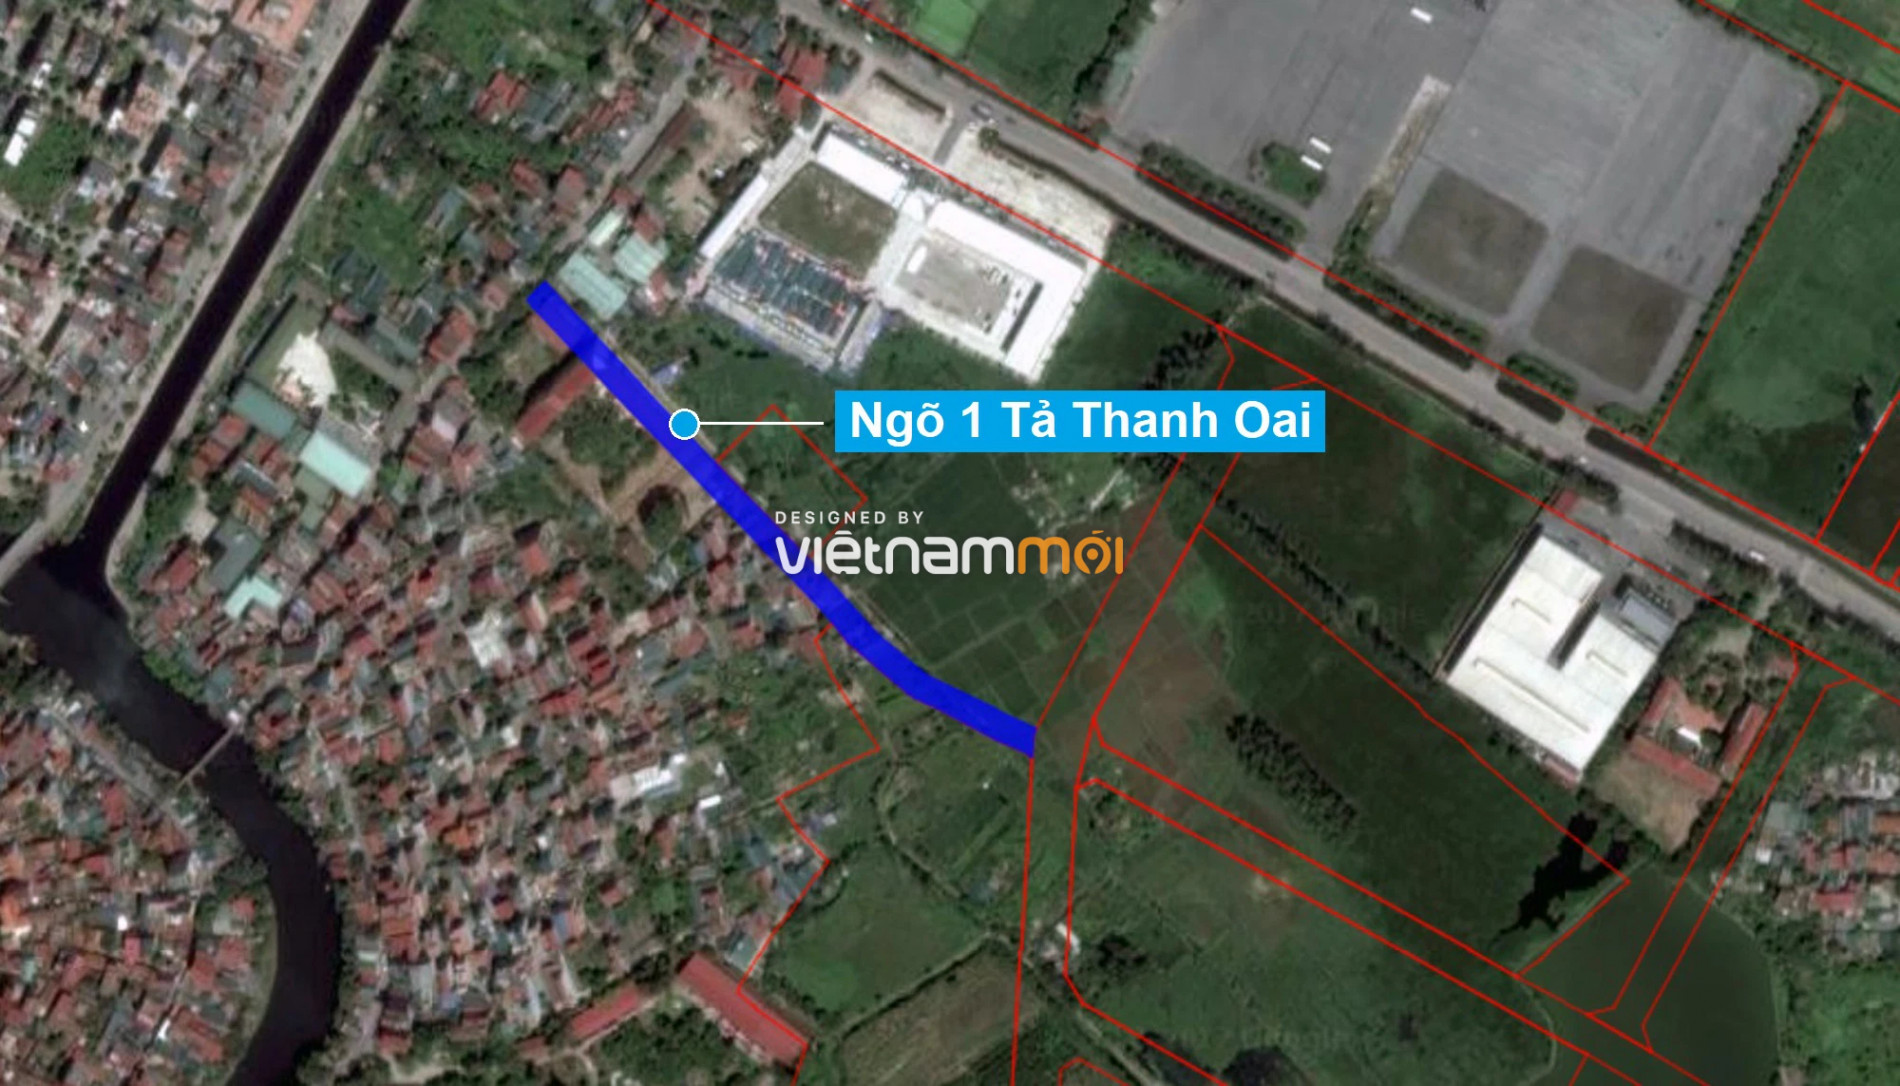 Những khu đất sắp thu hồi để mở đường ở xã Tả Thanh Oai, Thanh Trì, Hà Nội (phần 1) - Ảnh 8.